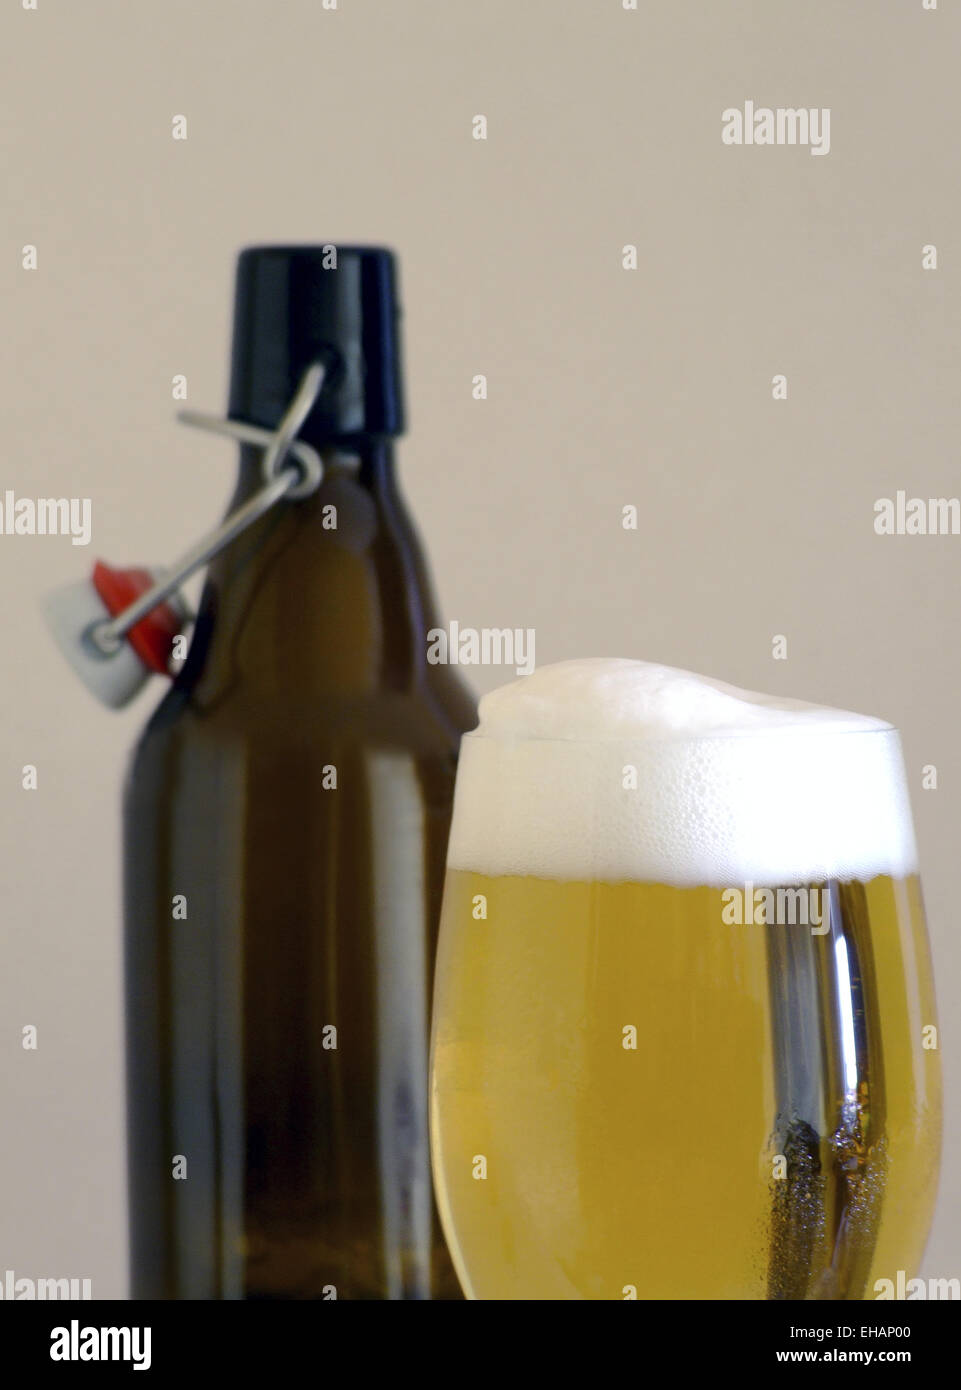 Bier / beer Stock Photo